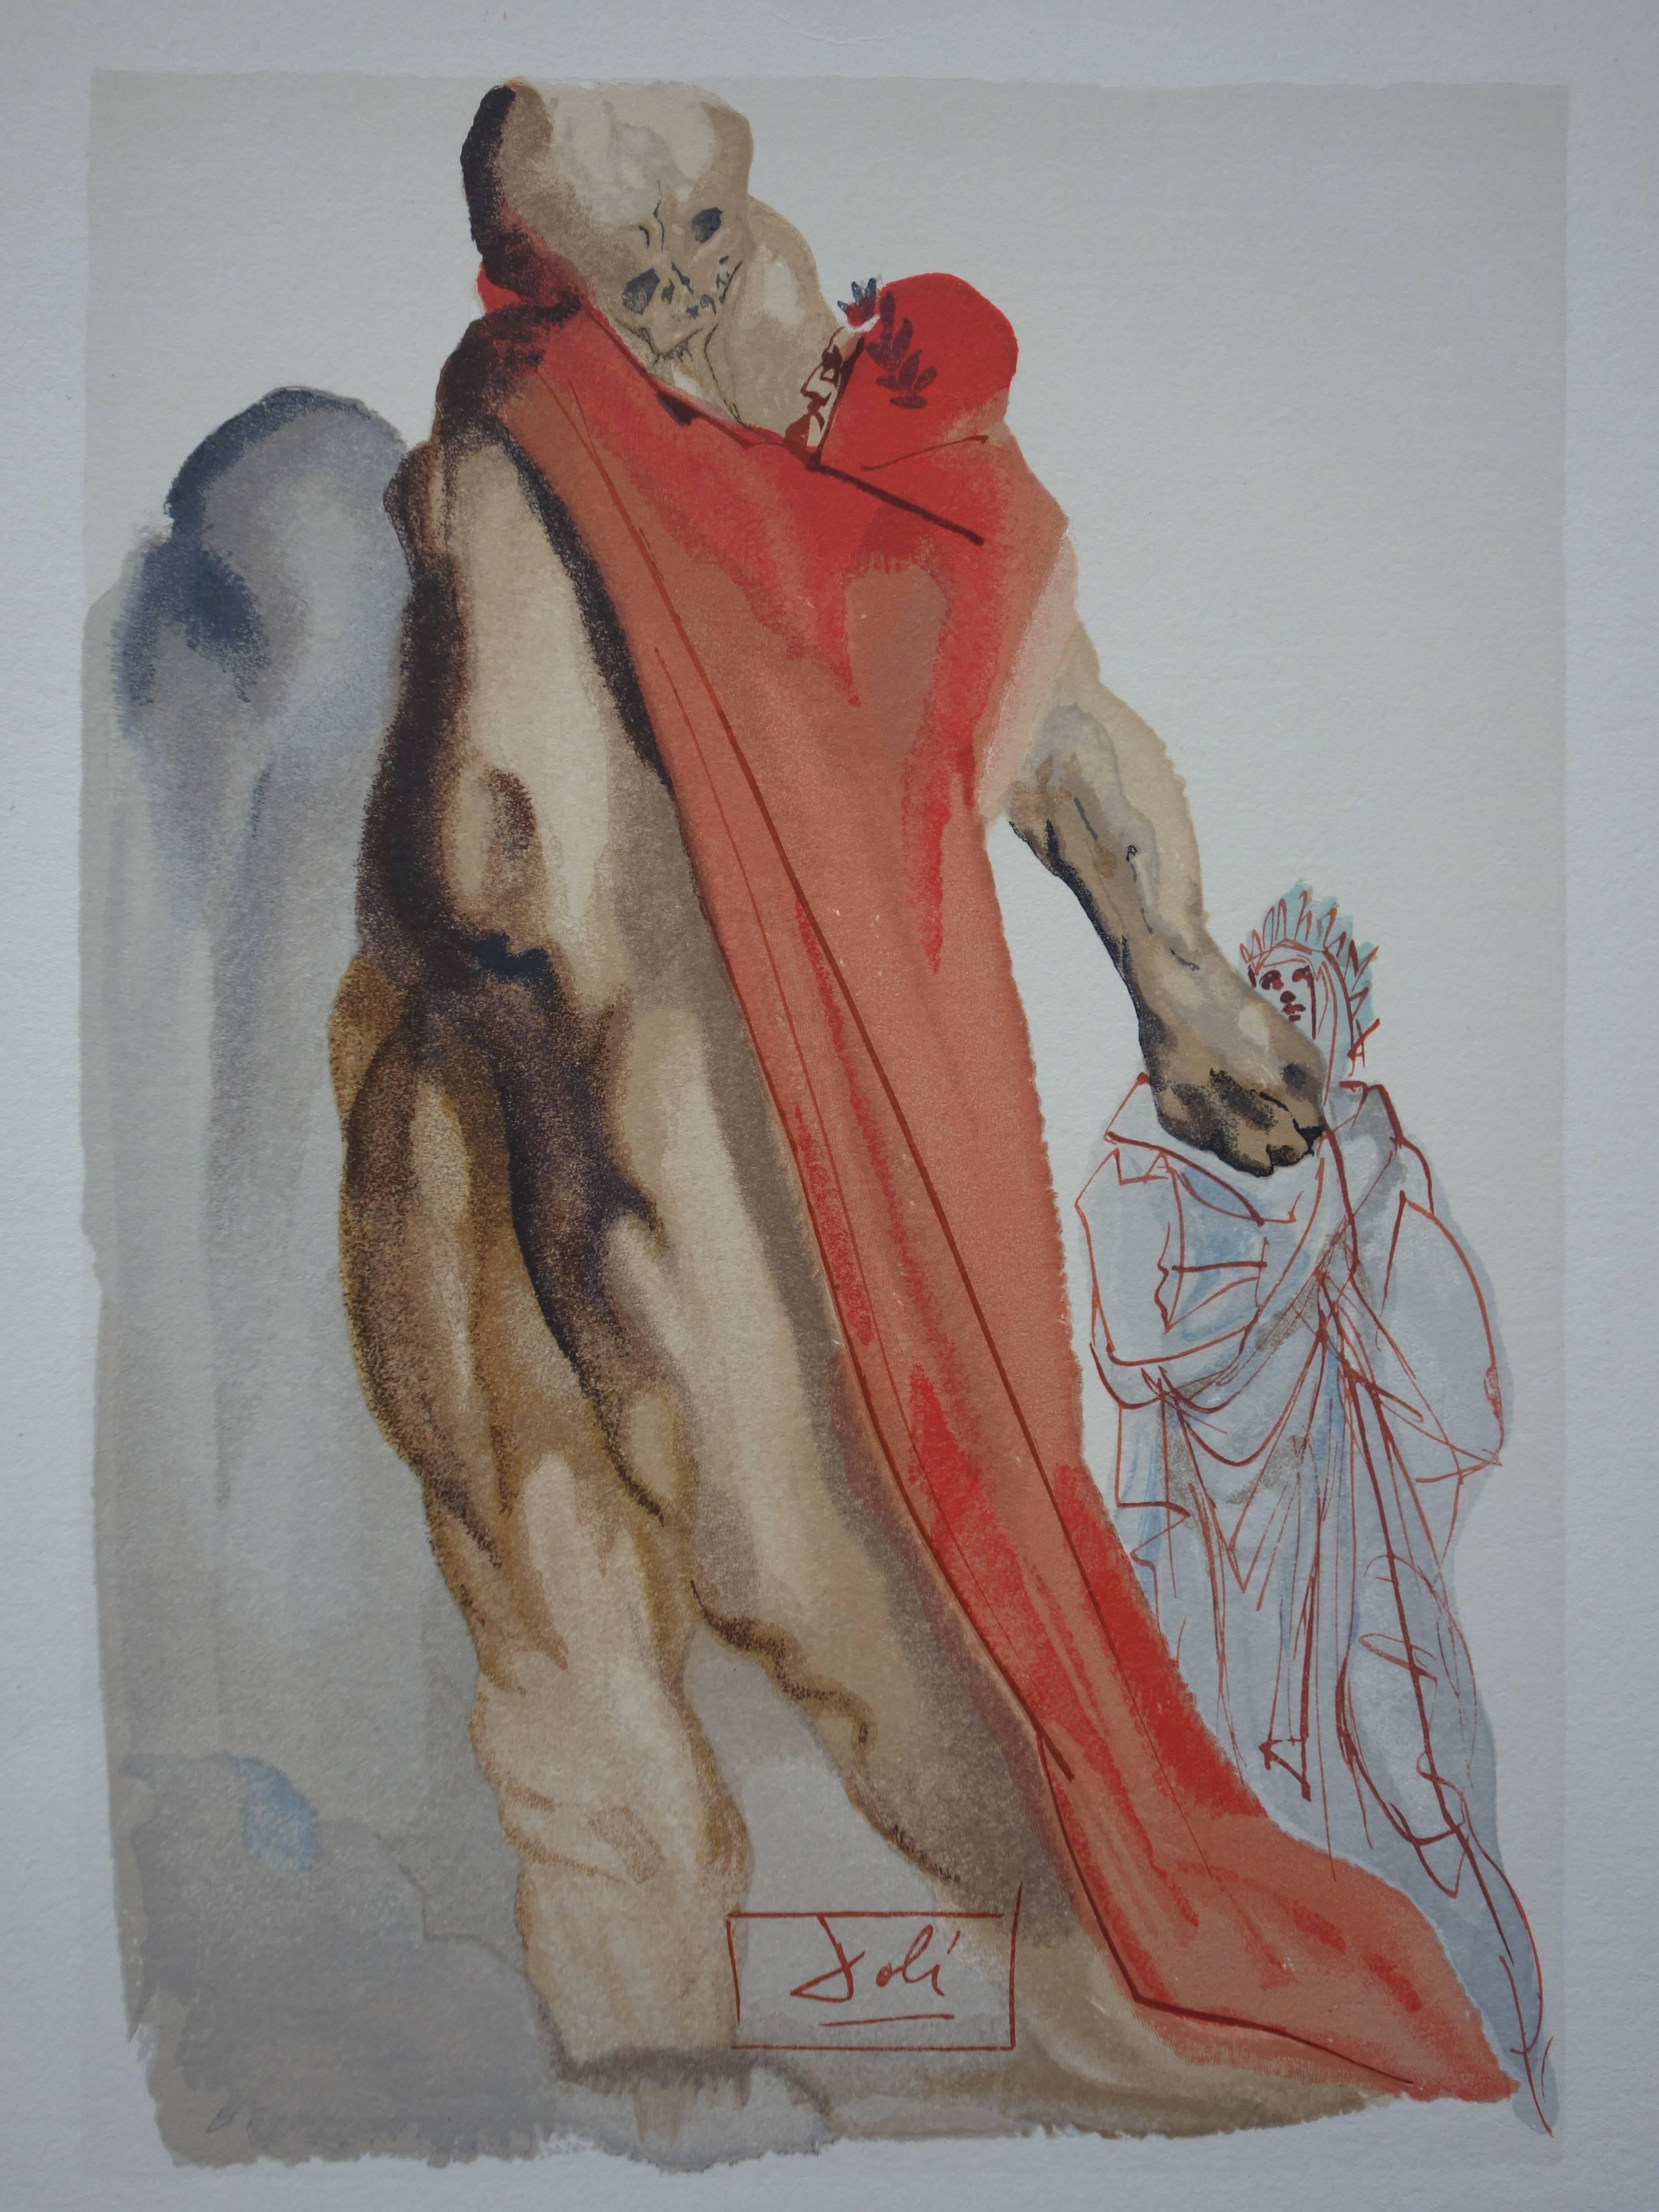 Salvador Dali (1904-1989)
Purgatoire 5 - Les reproches de Virgile

Gravure sur bois en couleur
Signature imprimée dans la plaque
1960/63
Imprimé sur papier Vélin BFK Rives
Taille 32,8 x 26,4 cm (c. 13 x 10